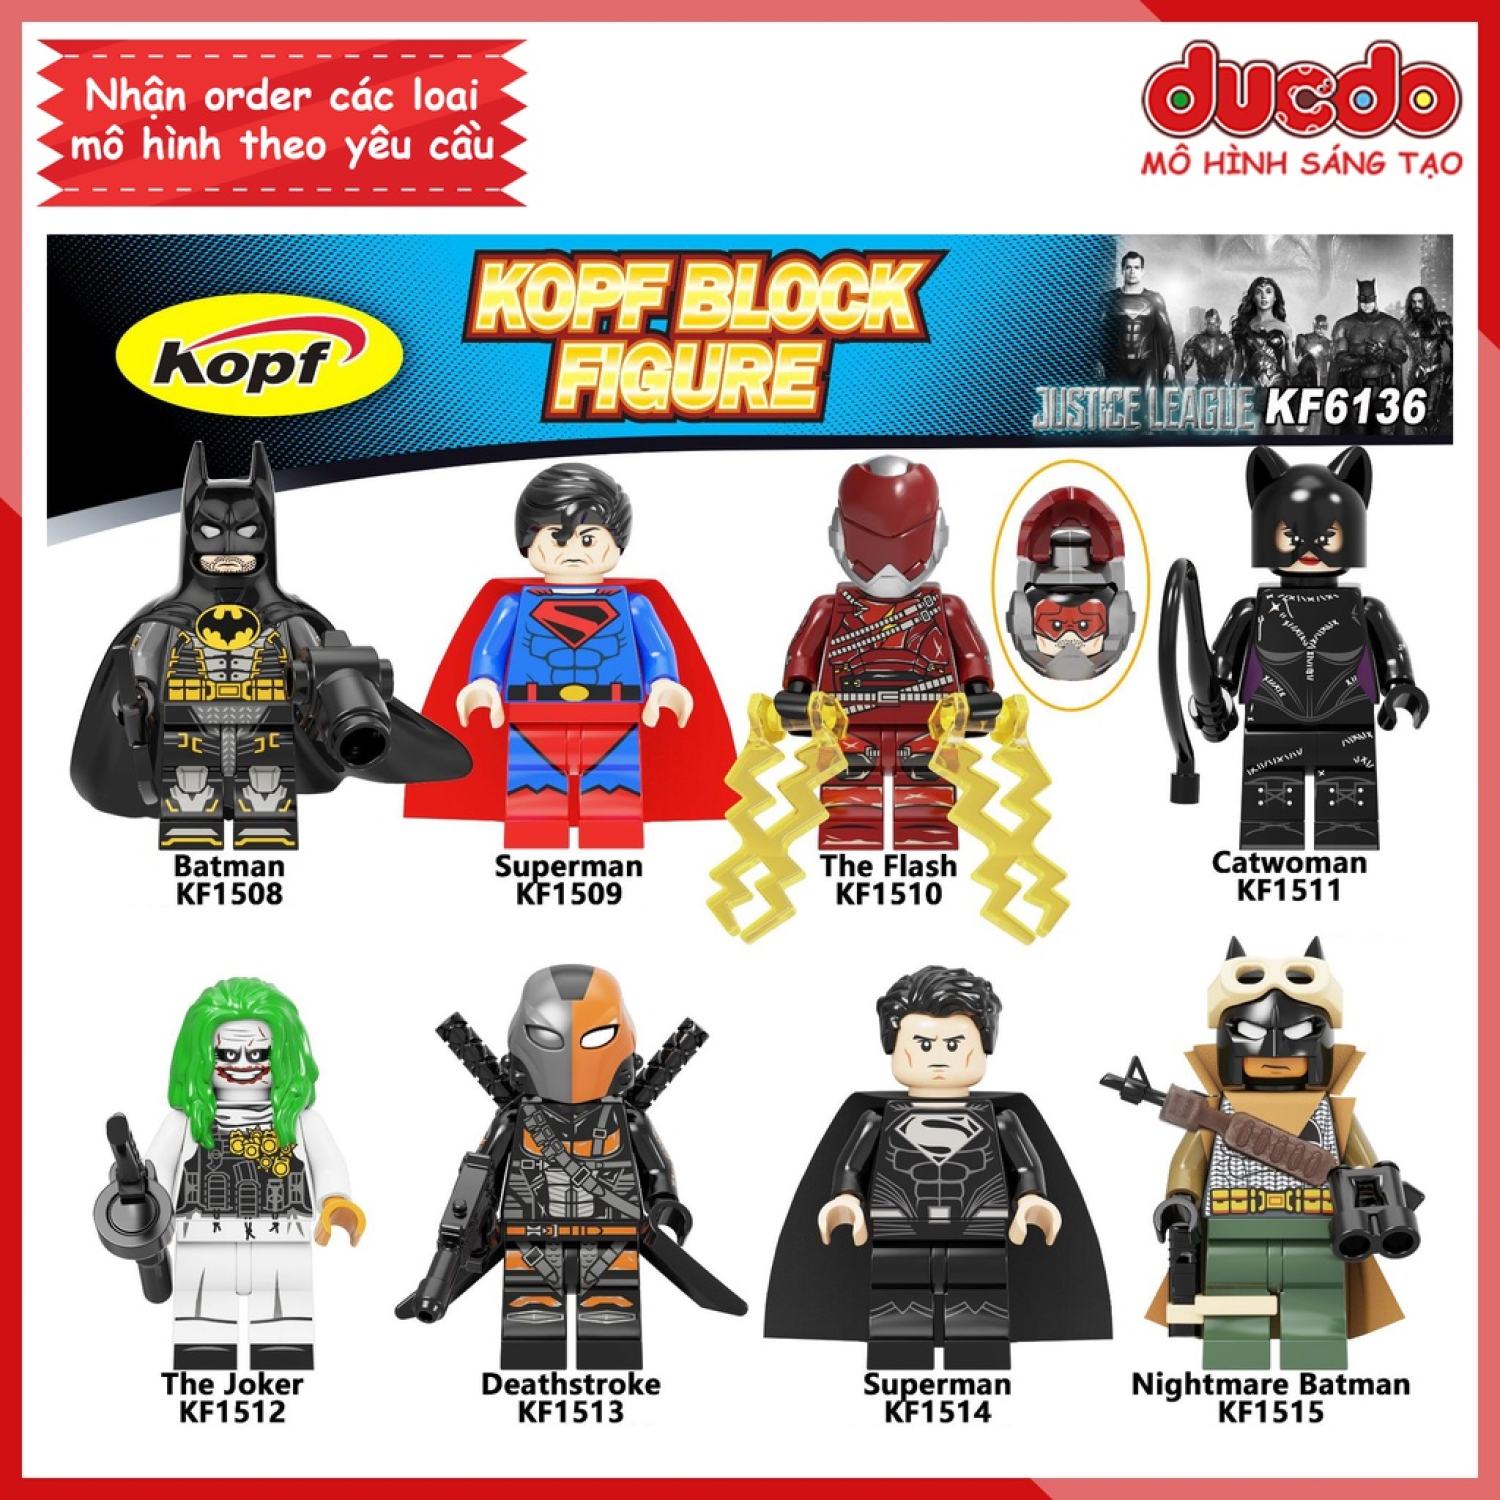 Minifigures các siêu anh hùng Justice League Batman tuyệt đẹp - Đồ Chơi Lắp  ɡhép Xếp Hình Mini Mô hình Kopf KF6136 